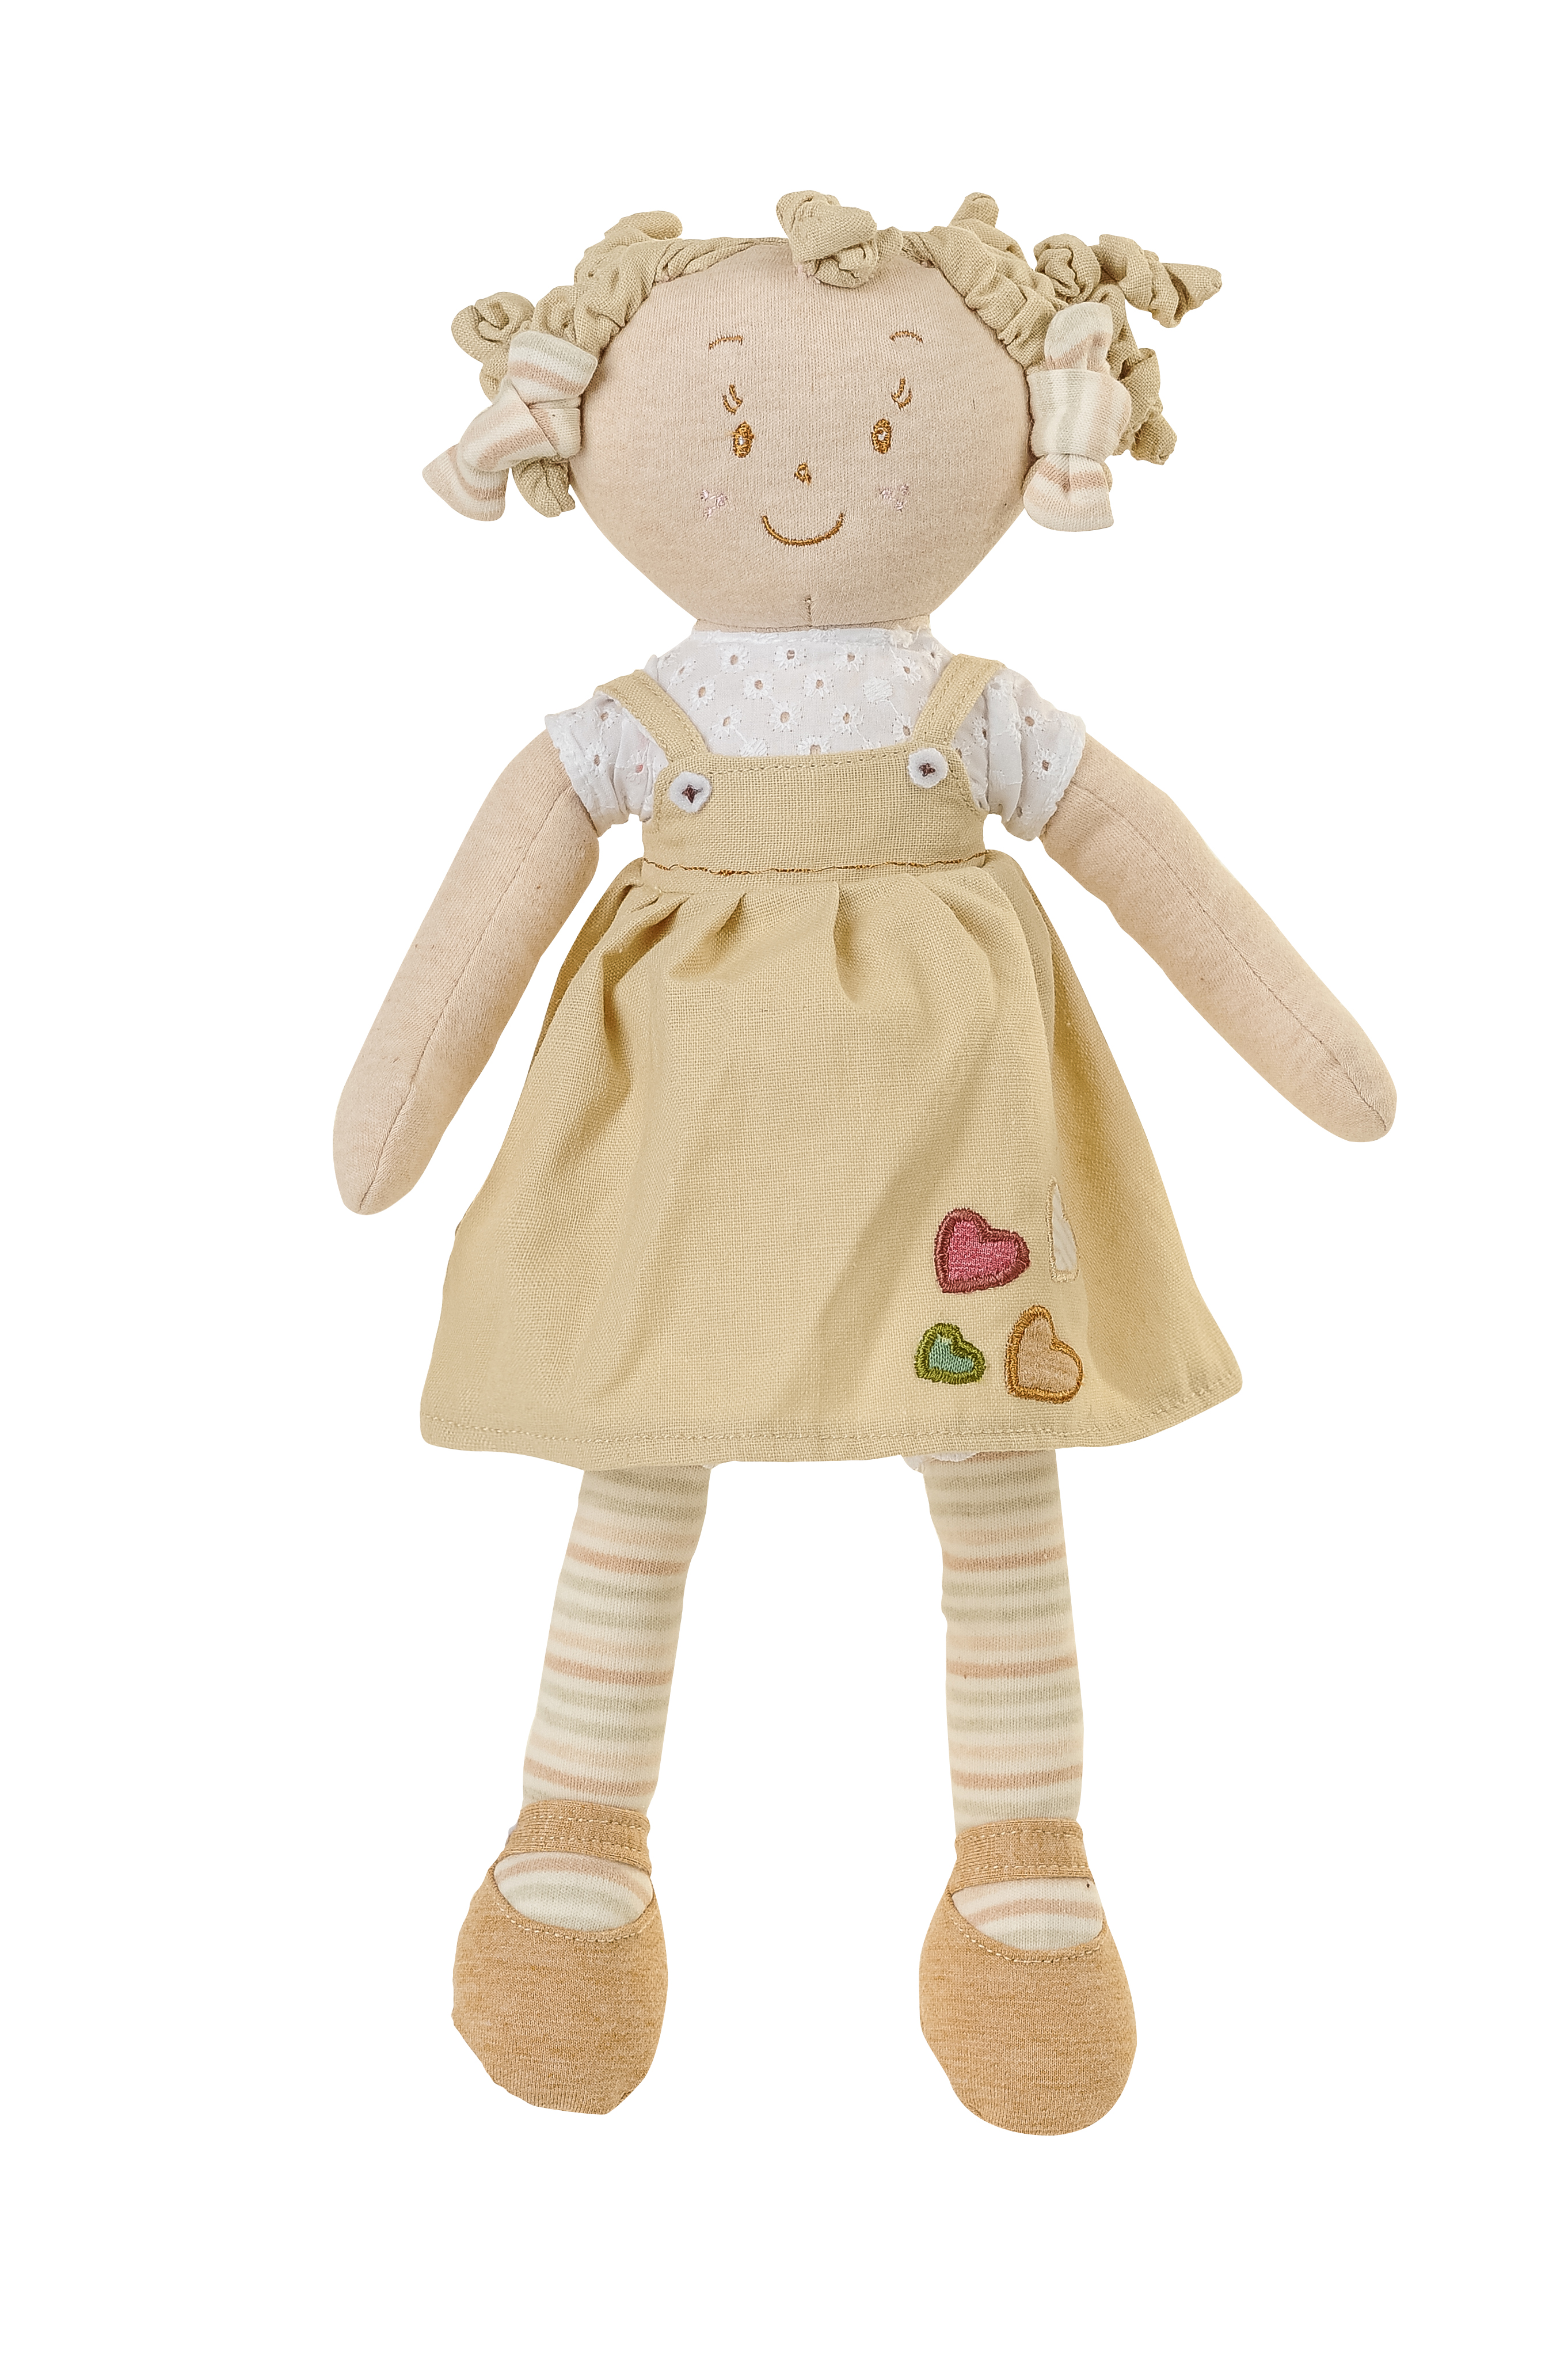 Hračka panenka Lilly žlutá 37cm, 0m+